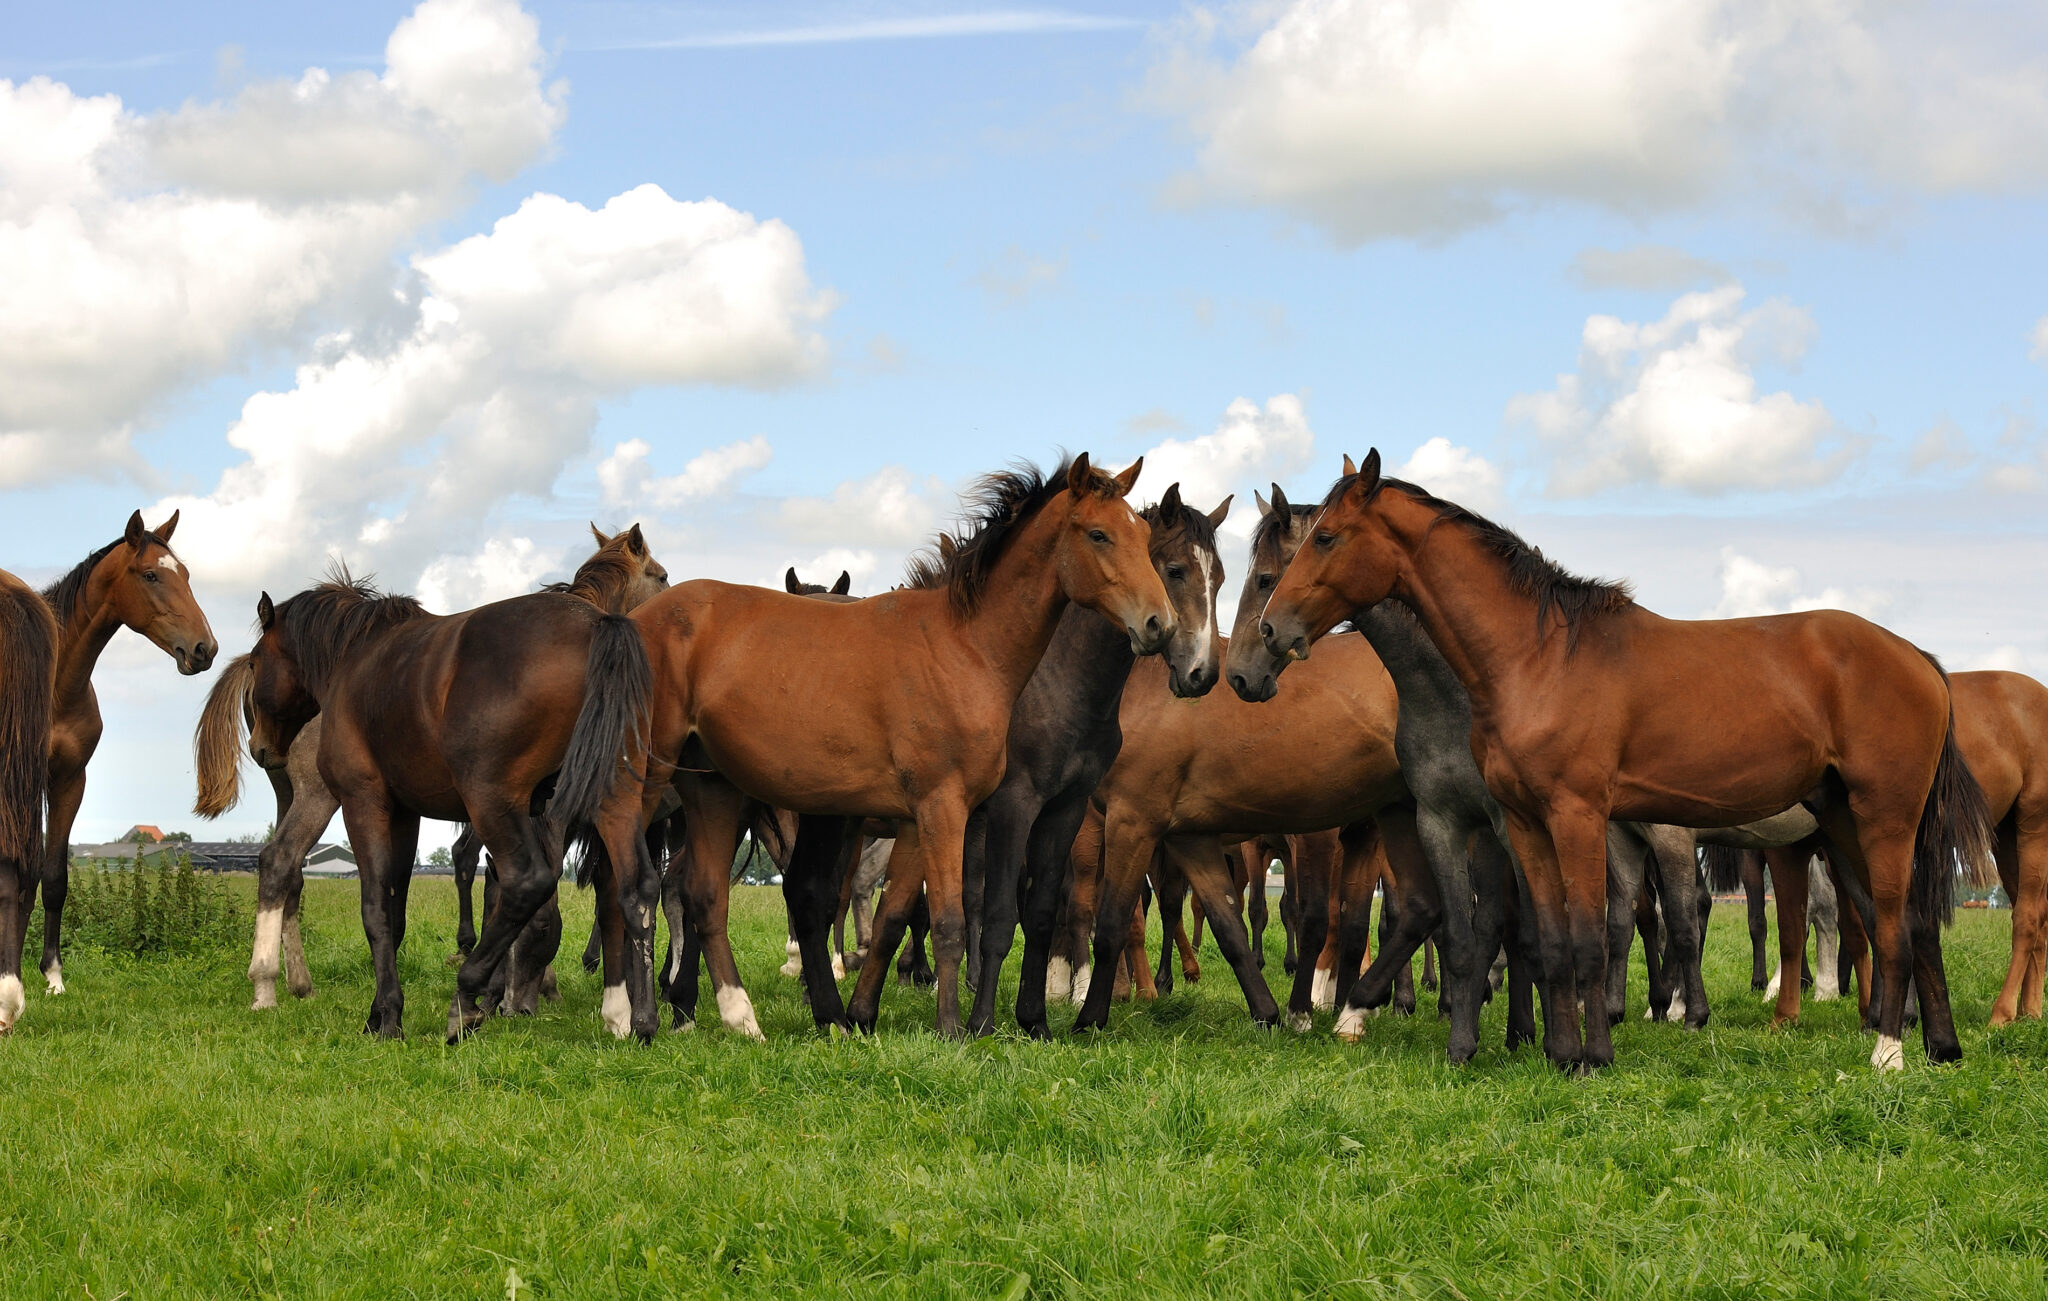 Deze prachtige paarden liepen bij het dorpje Deinum in Friesland 